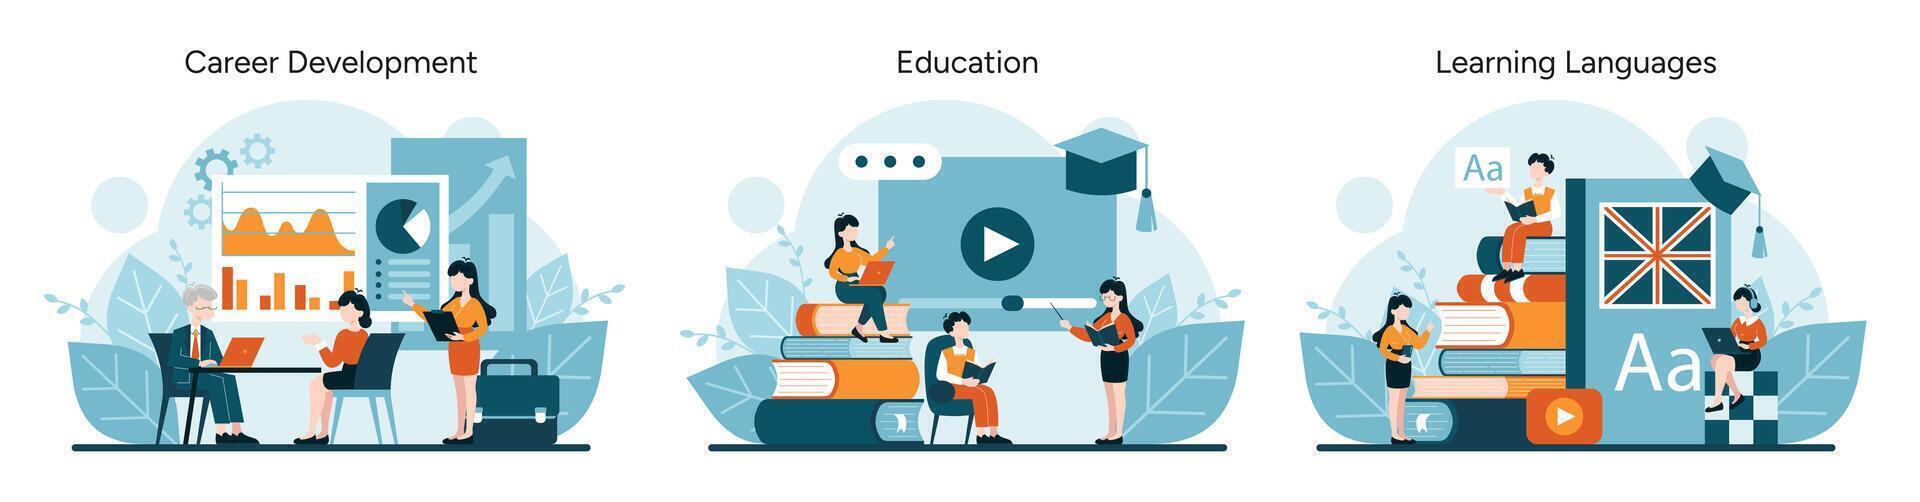 diagram och möten skildra karriär befordran. digital inlärning och bok stackar för utbildning. språk förvärv med multimedia verktyg vektor